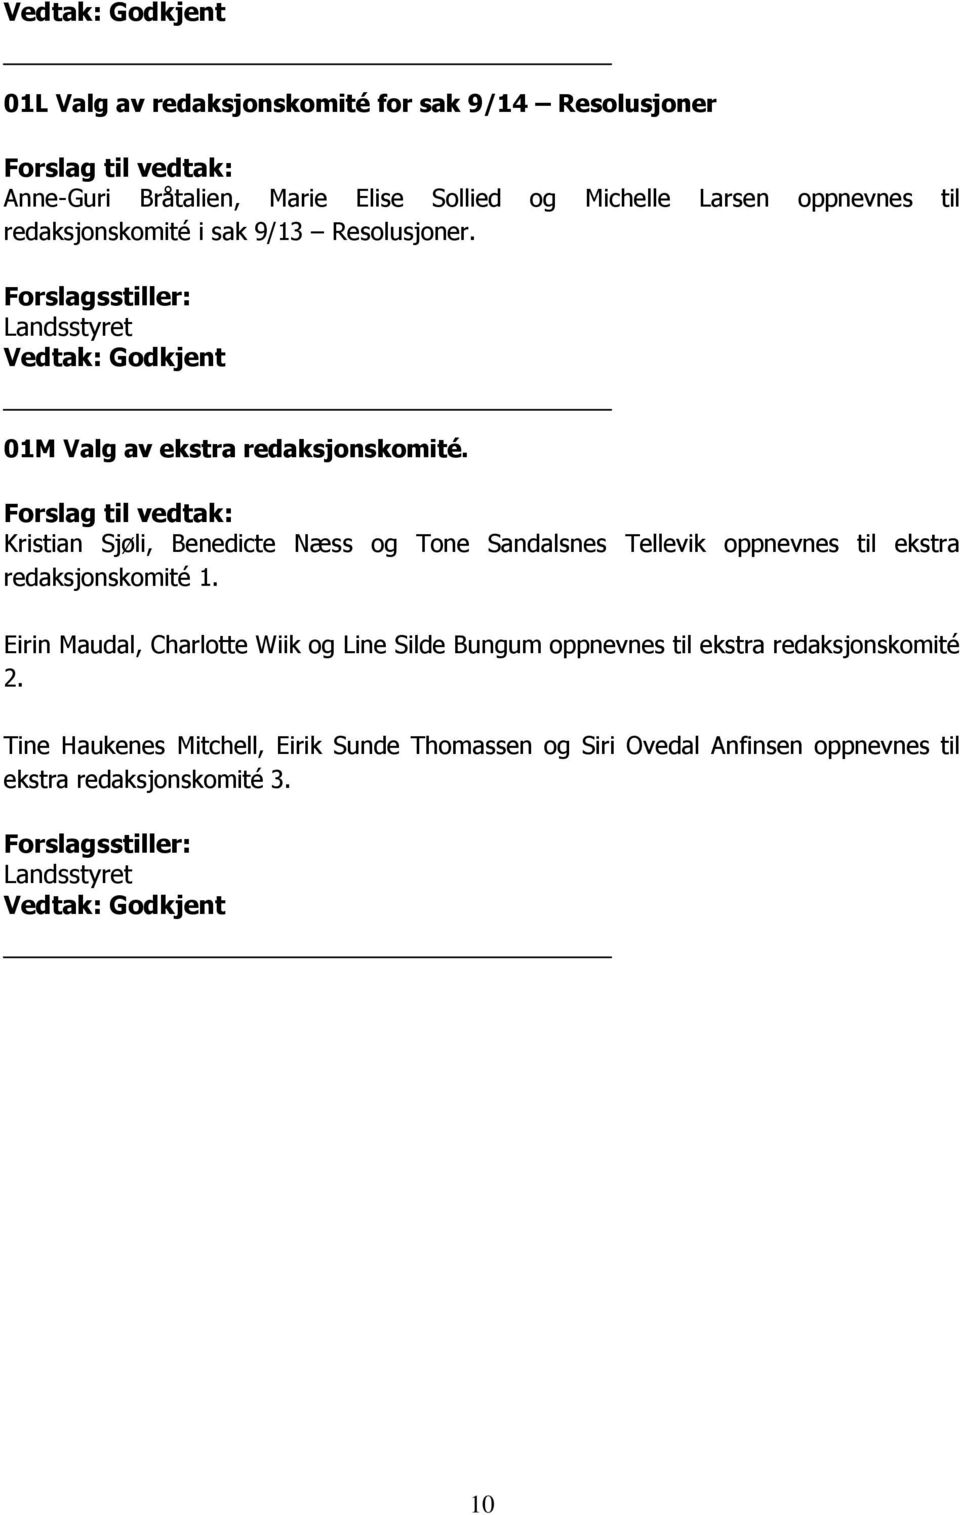 Forslag til vedtak: Kristian Sjøli, Benedicte Næss og Tone Sandalsnes Tellevik oppnevnes til ekstra redaksjonskomité 1.